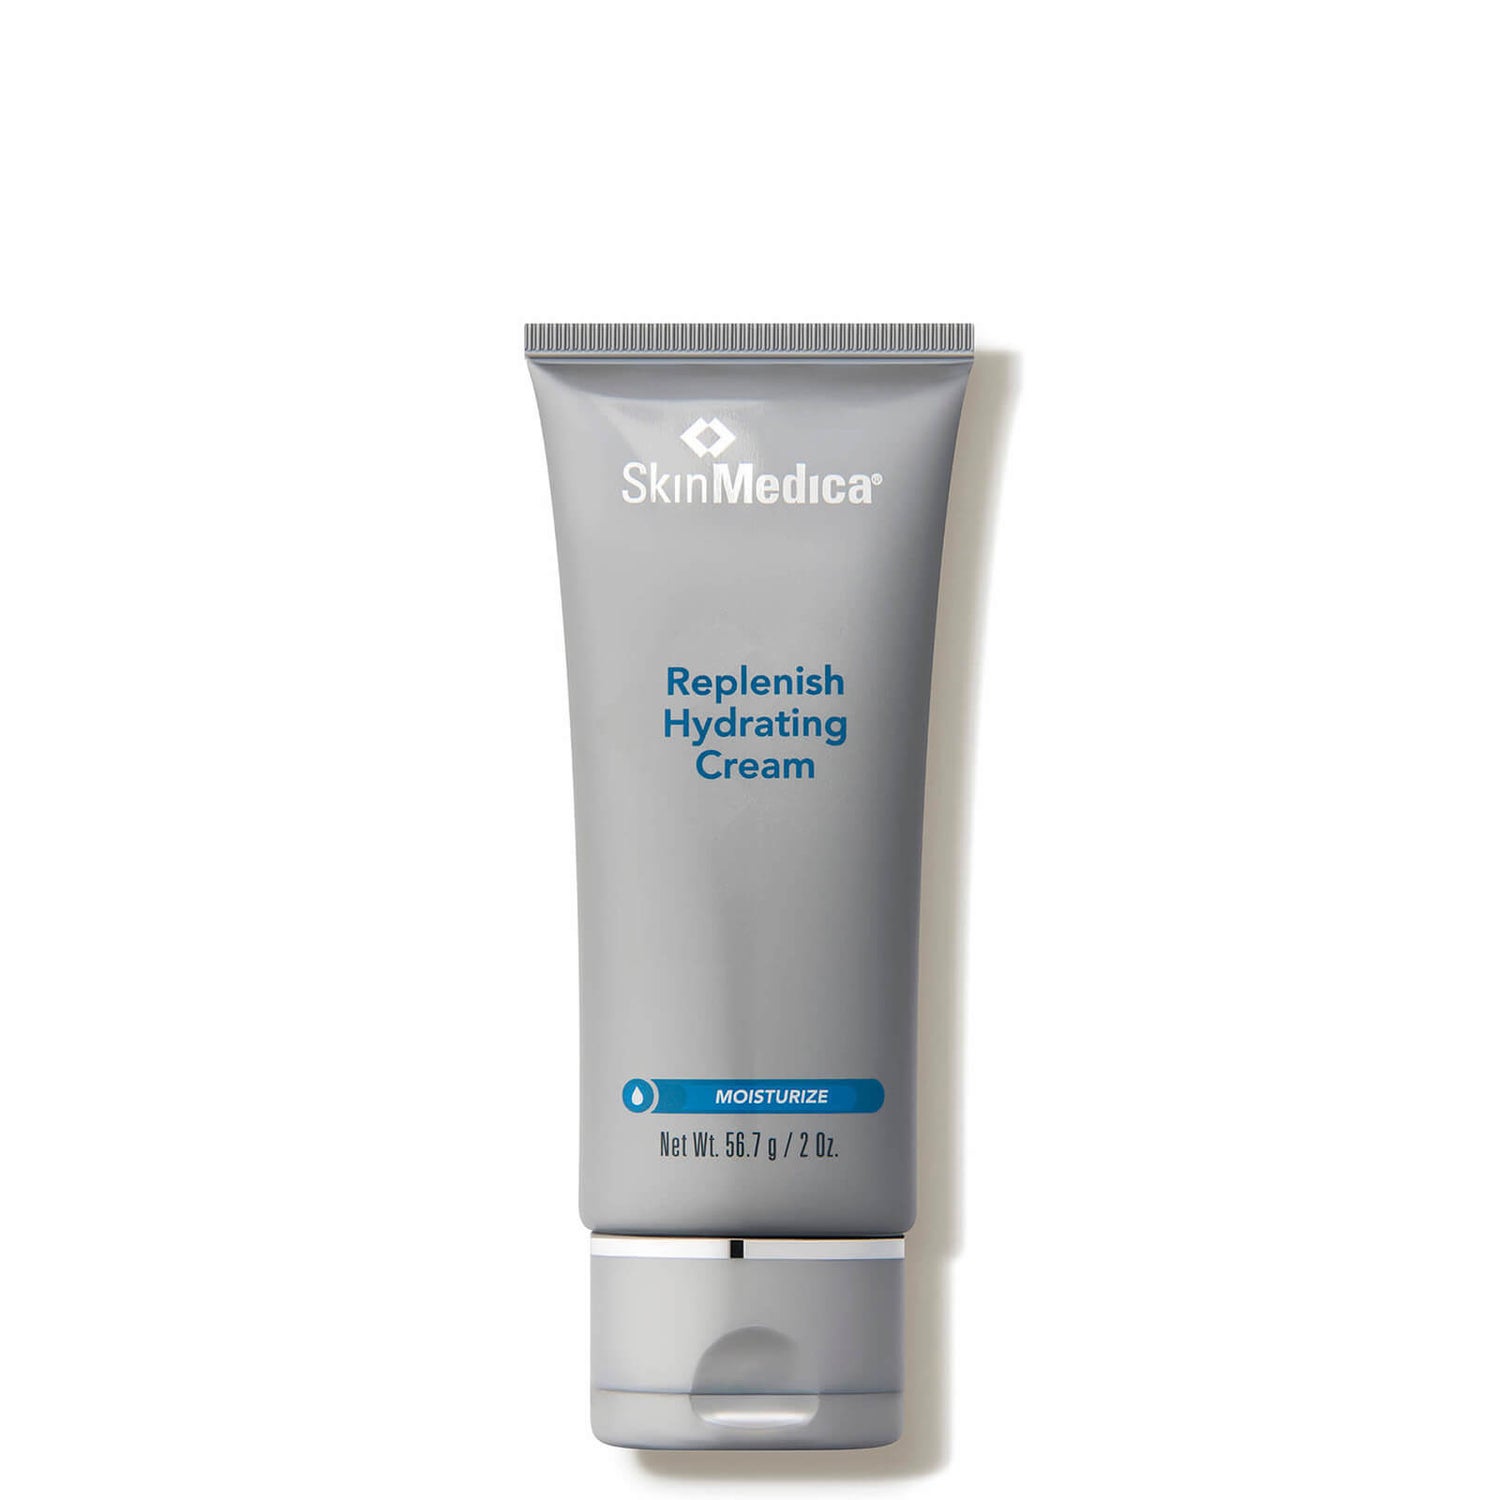 SkinMedica Replenish Hydrating Cream (2 oz.)